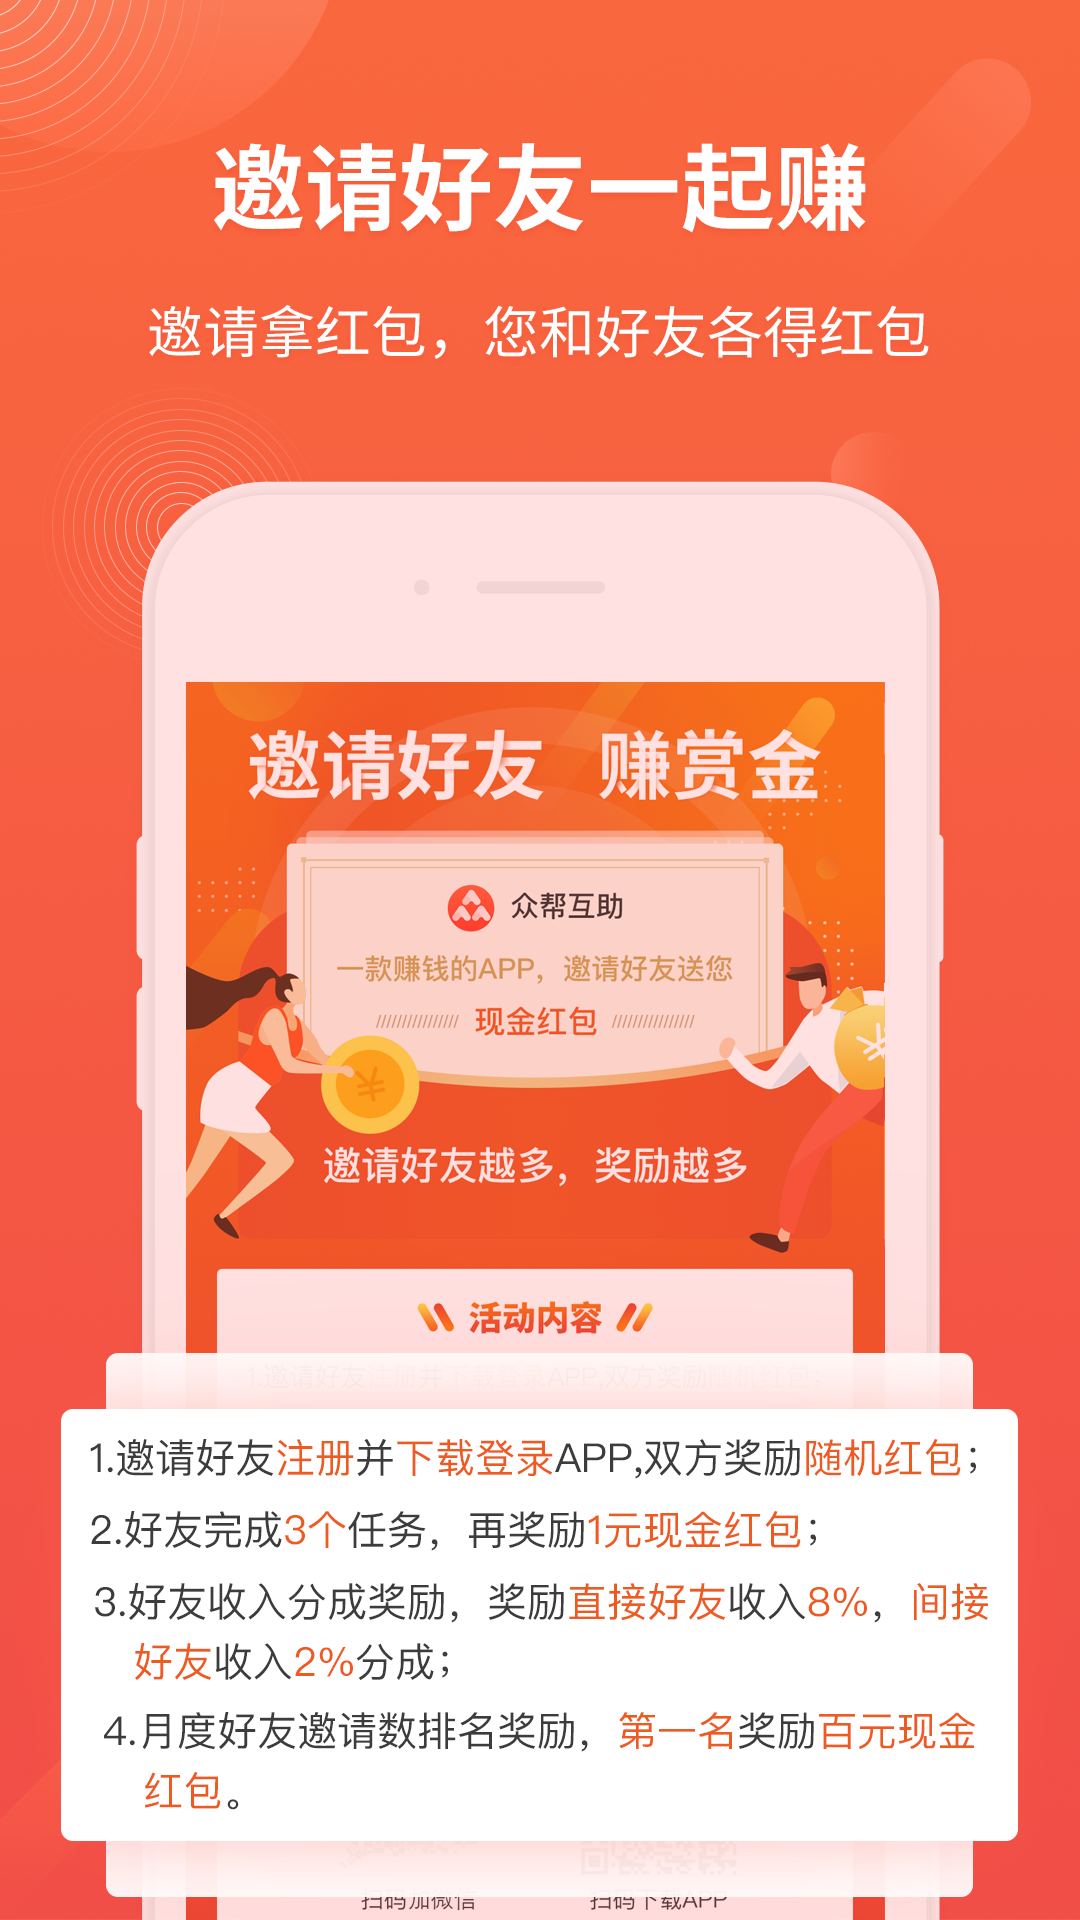 龙凤呈祥app怎么挣钱的 2021龙凤呈祥app怎么挣钱